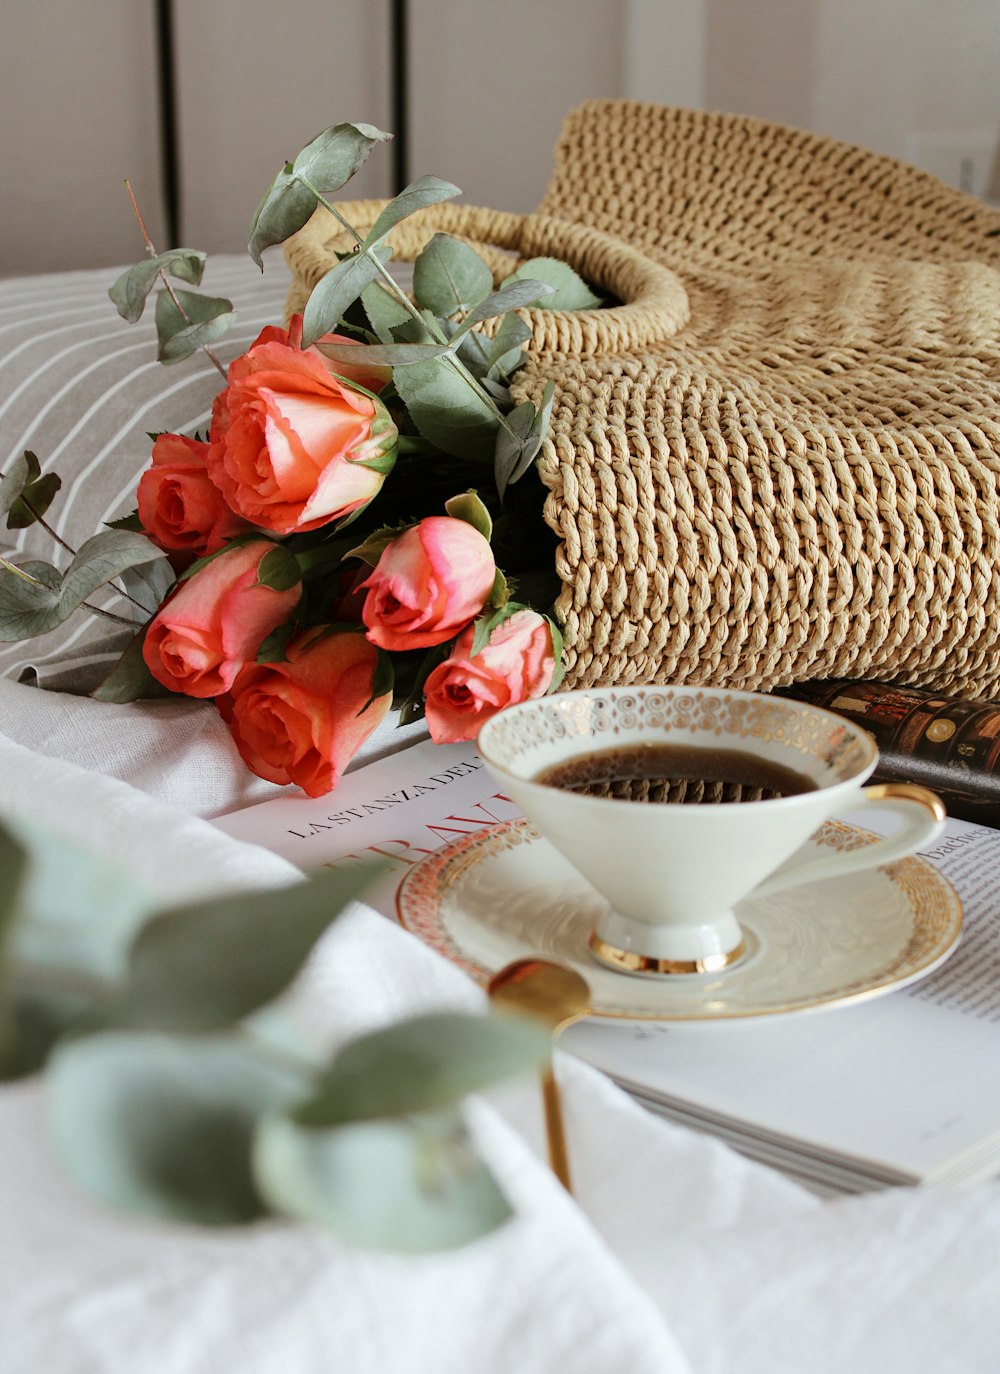 rosas rojas junto a una taza de té de cerámica blanca sobre un mantel blanco